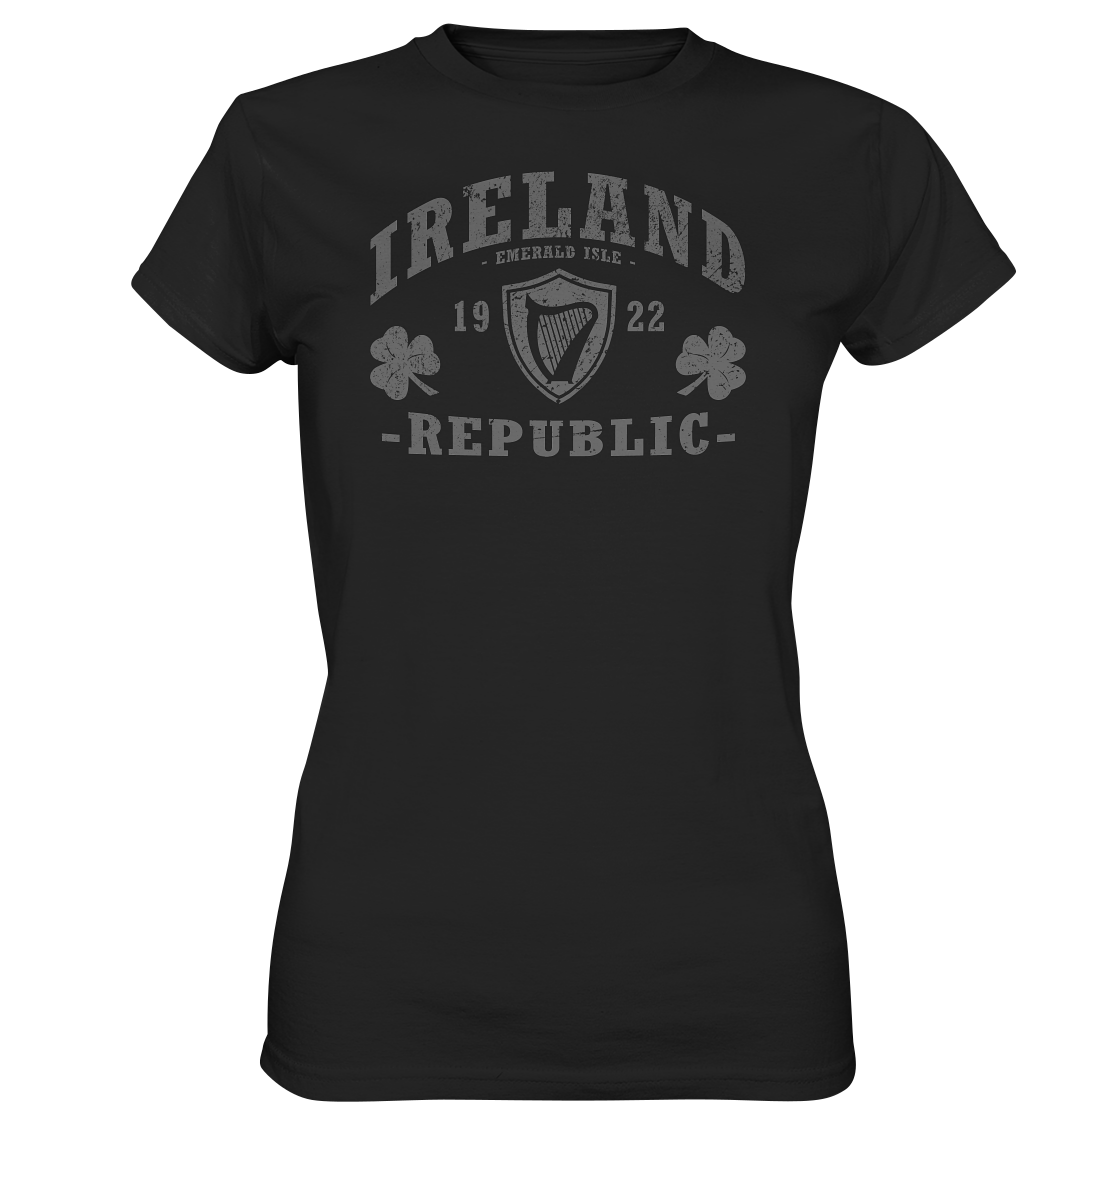 Ireland "Republic" - Ladies Premium Shirt